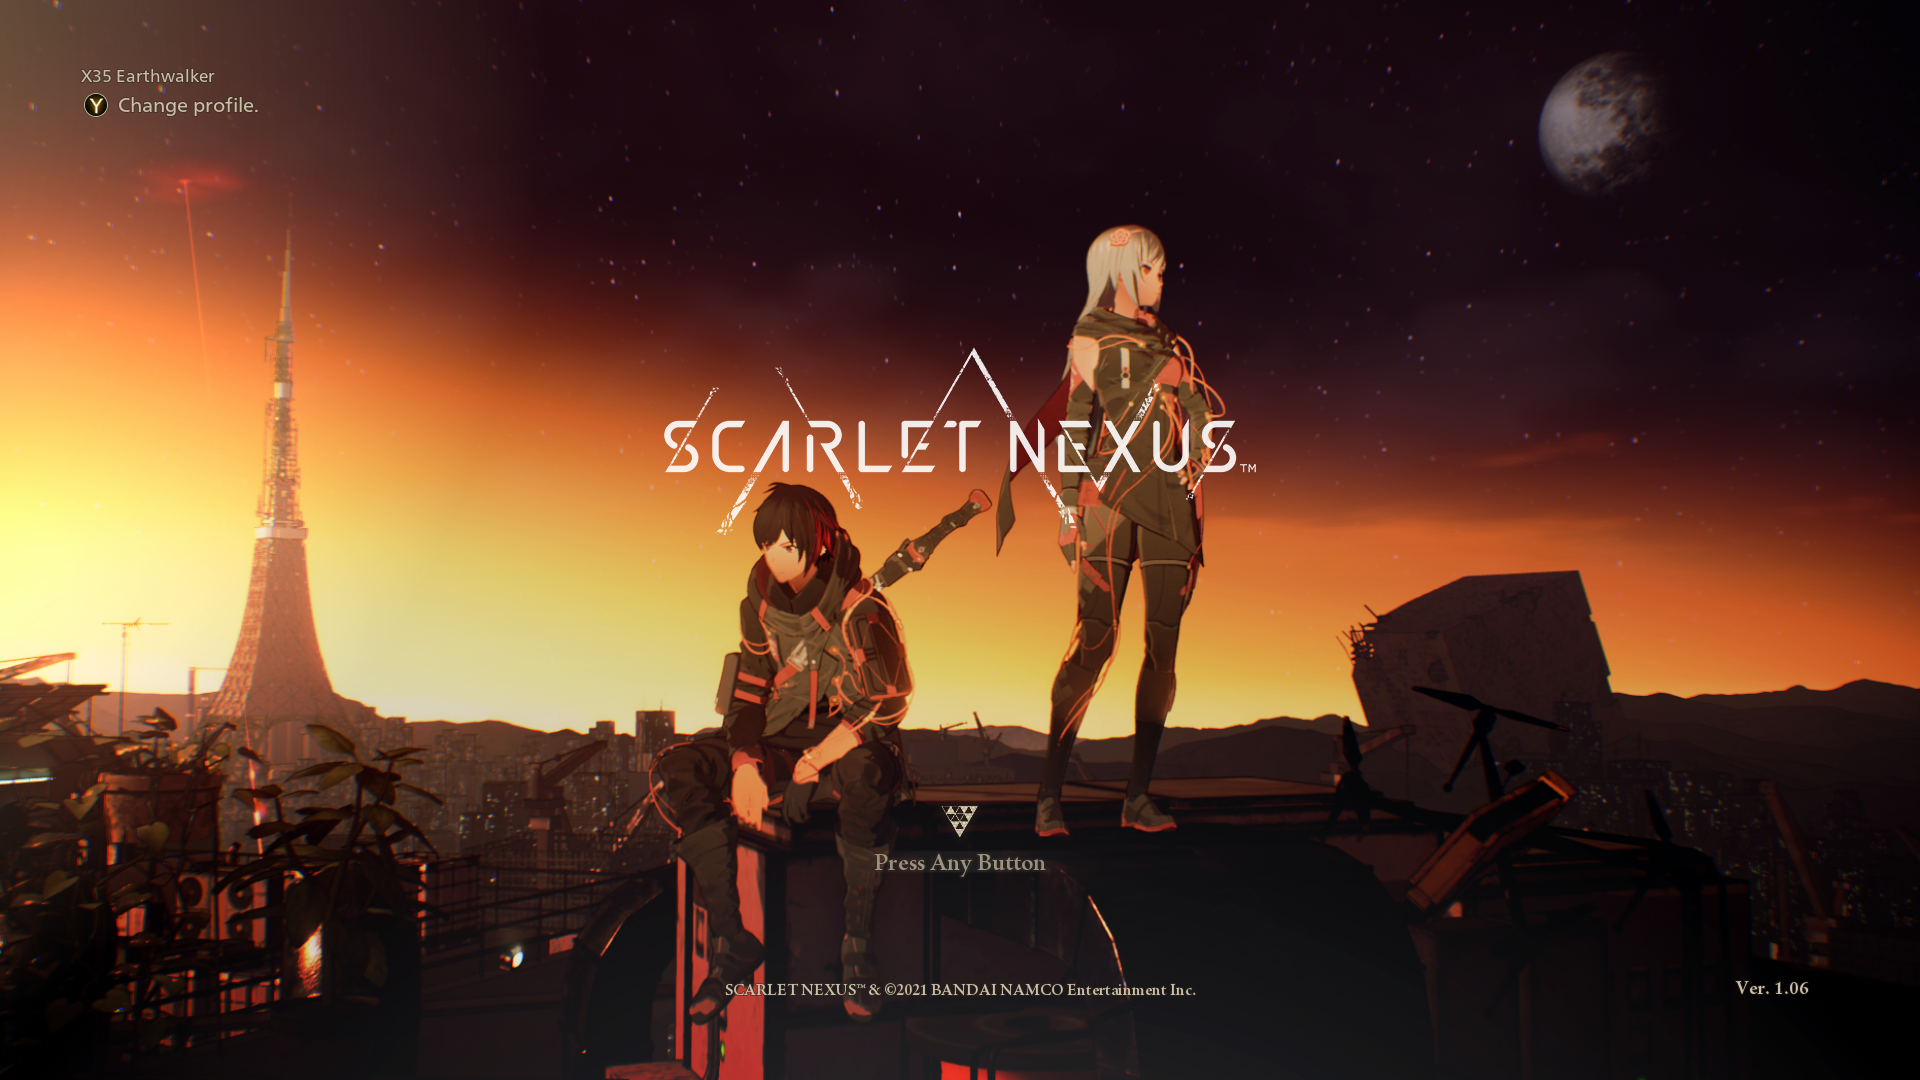 X35 Earthwalker Scarlet Nexus